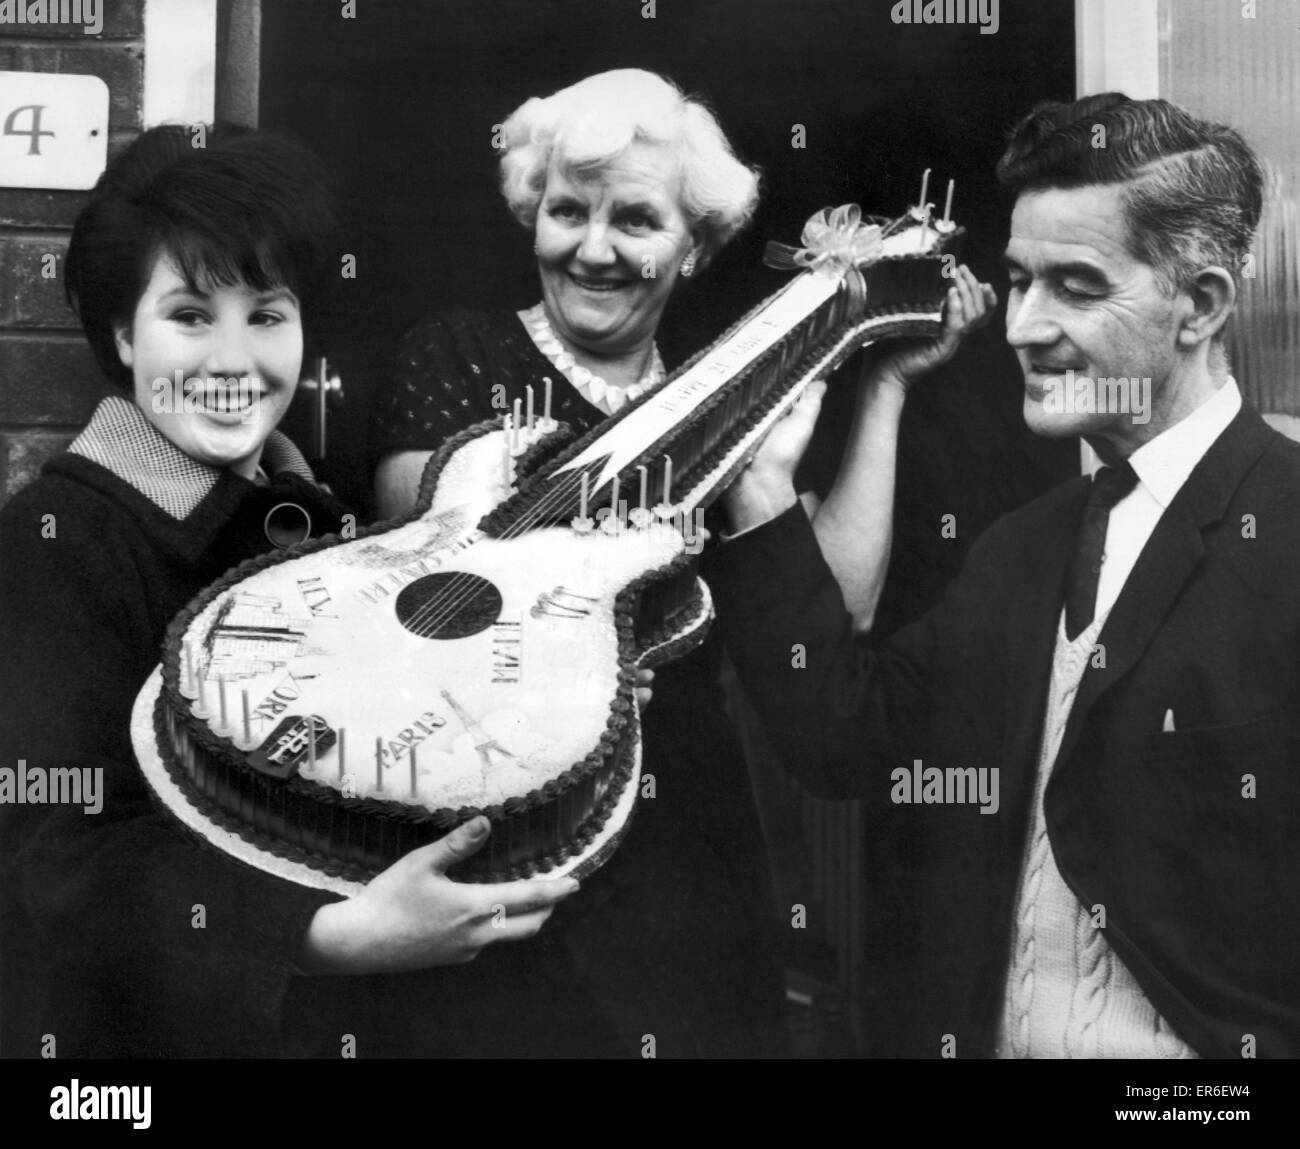 Beatles-Fan, Jeanette Vertrauen 16 aus West Derby, Liverpool, präsentiert Harold und Louise Harrison, Eltern von George Harrison, mit einer Geburtstagstorte in Form einer Gitarre, die sie dazu beigetragen, dass seinen 21. Geburtstag feiern. Bild 25. Februar 1964. Stockfoto